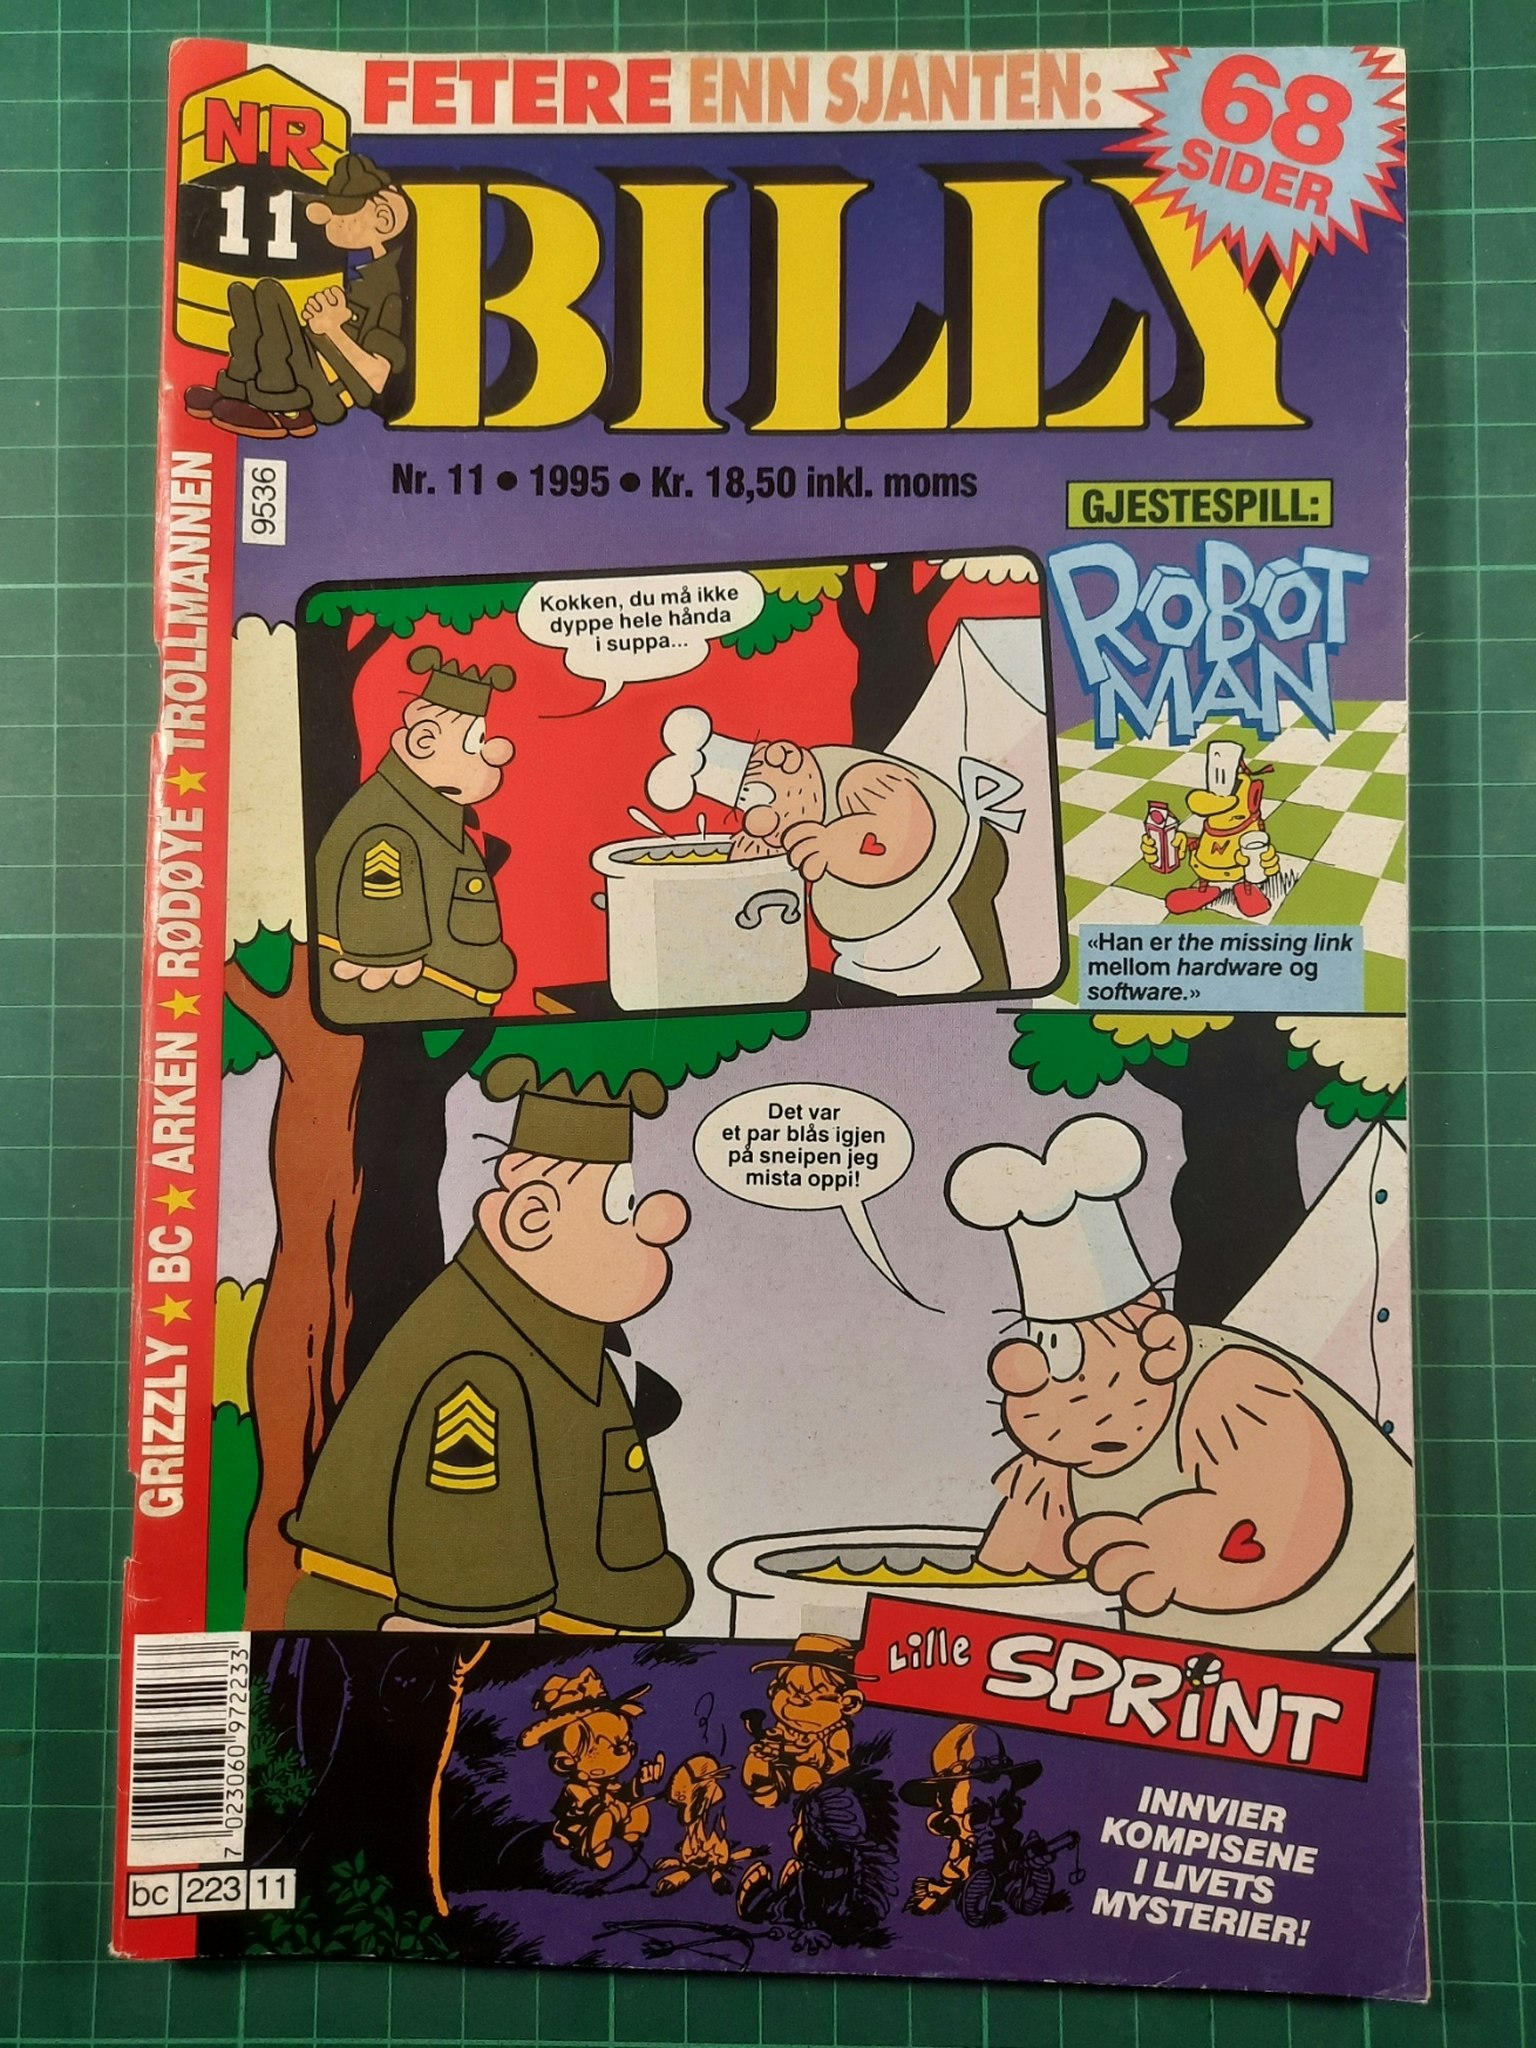 Billy 1995 - 11